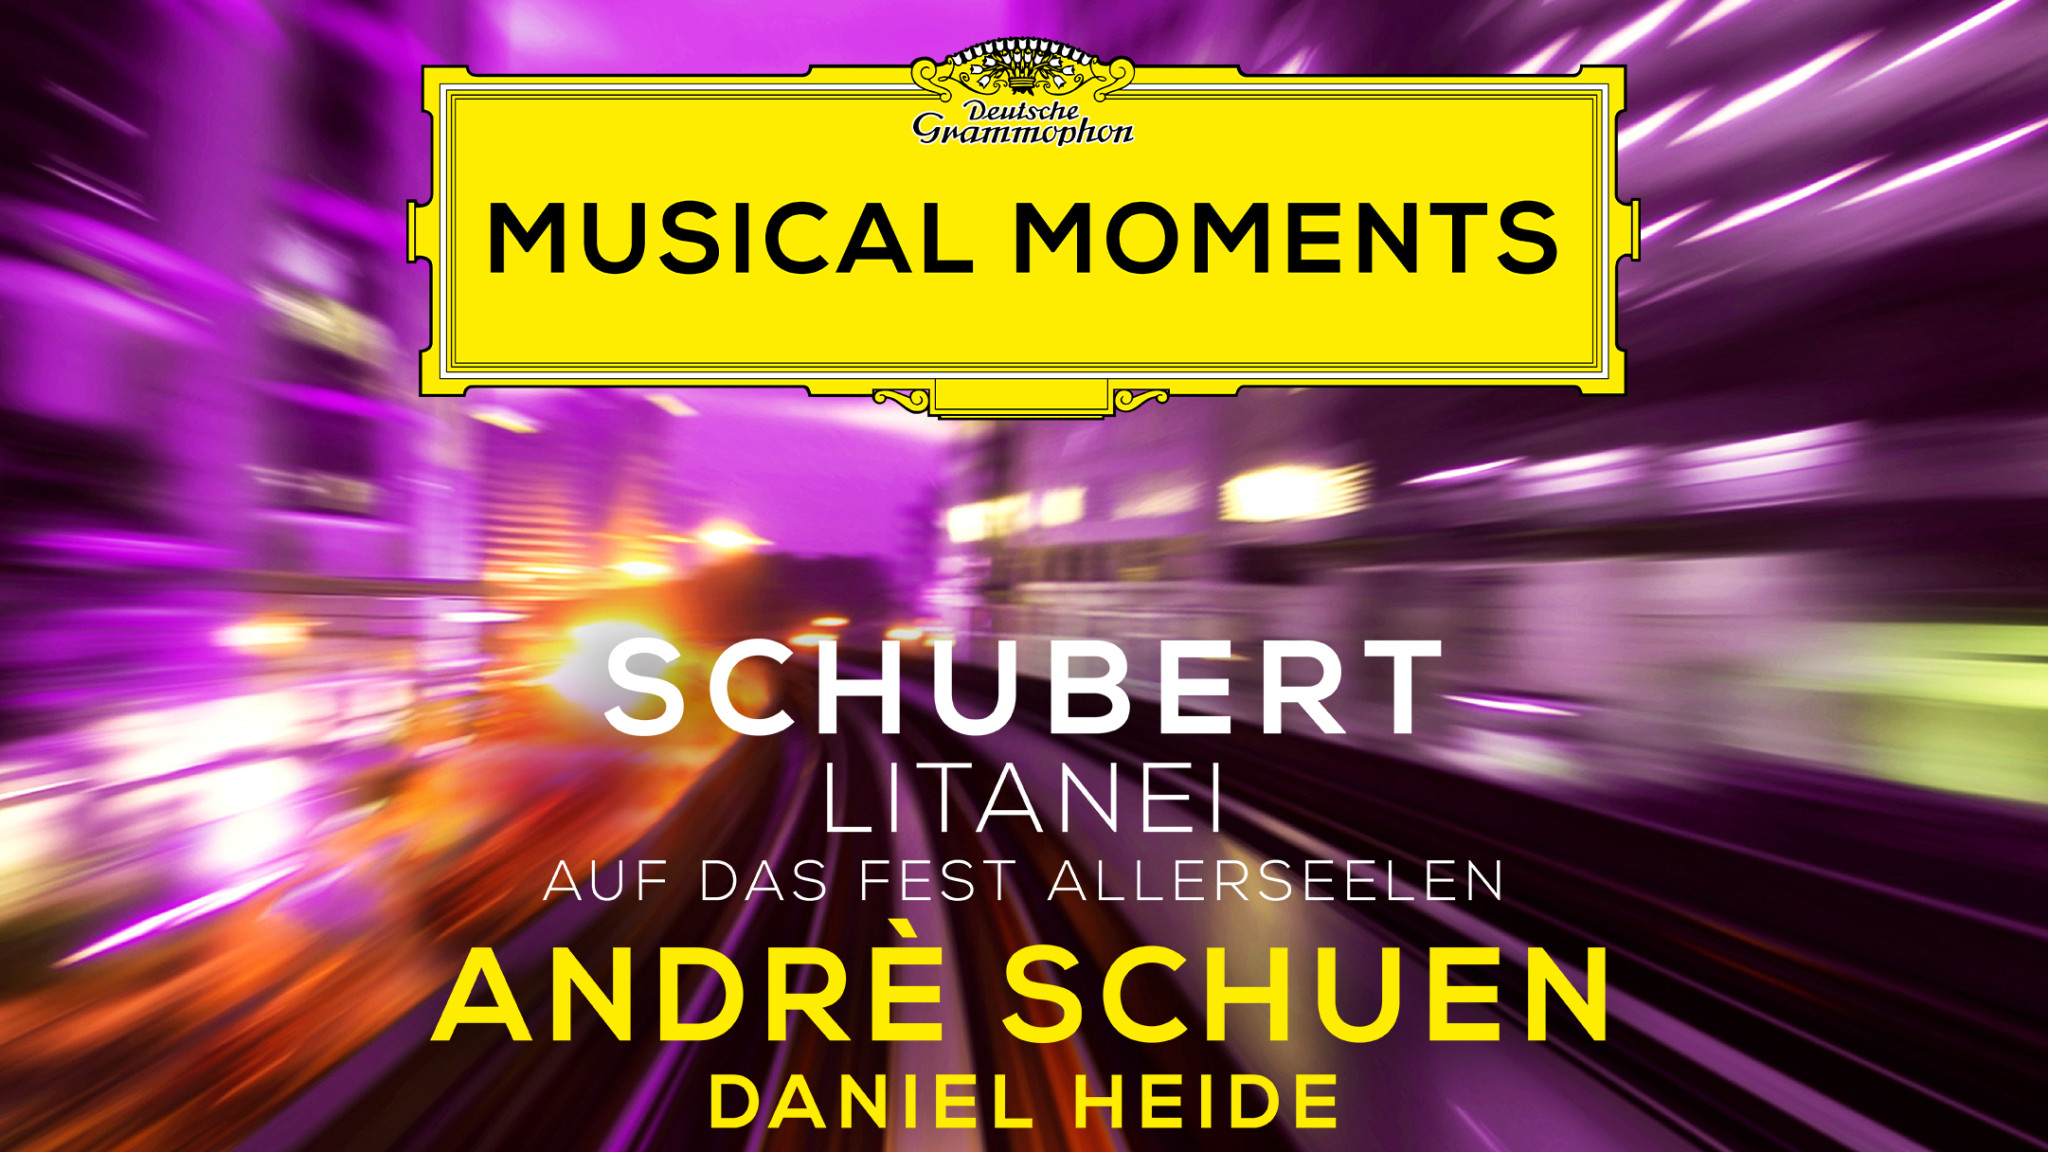 Musical Moments Andrè Schuen